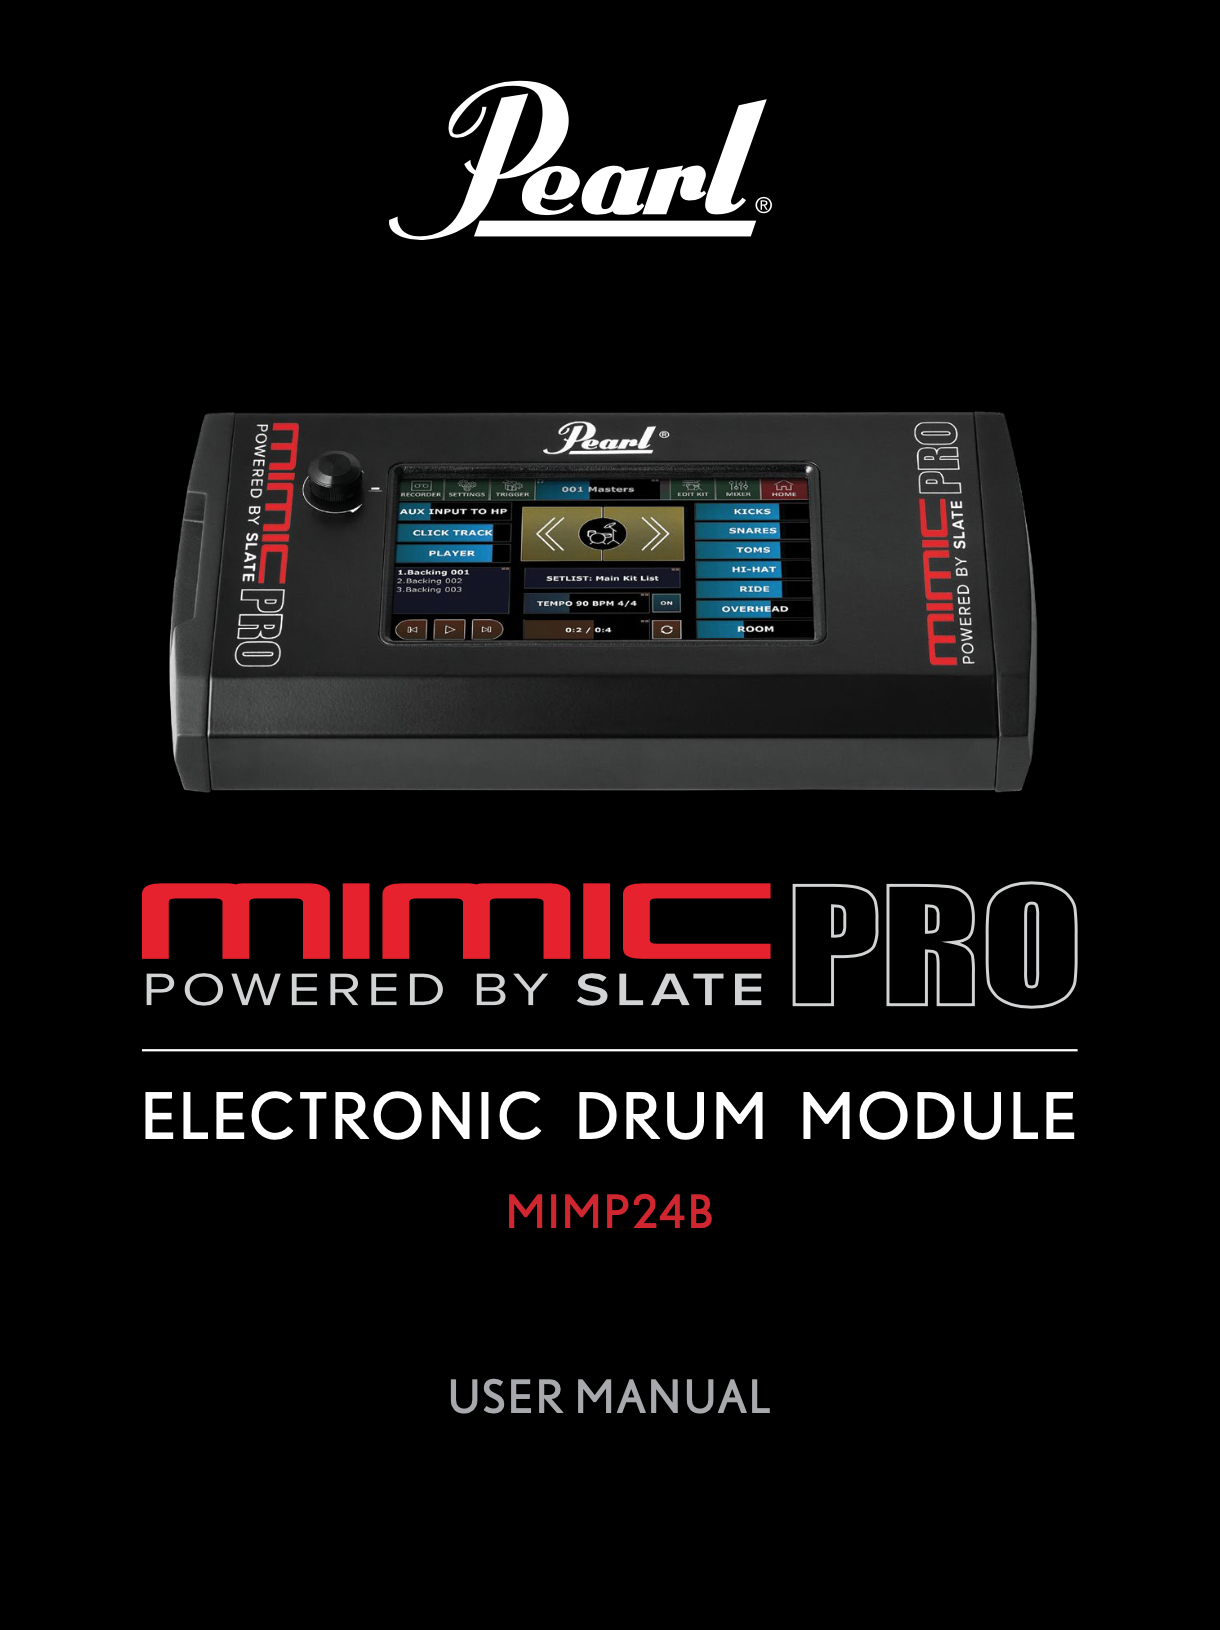 2019 Mimic Pro User Manual